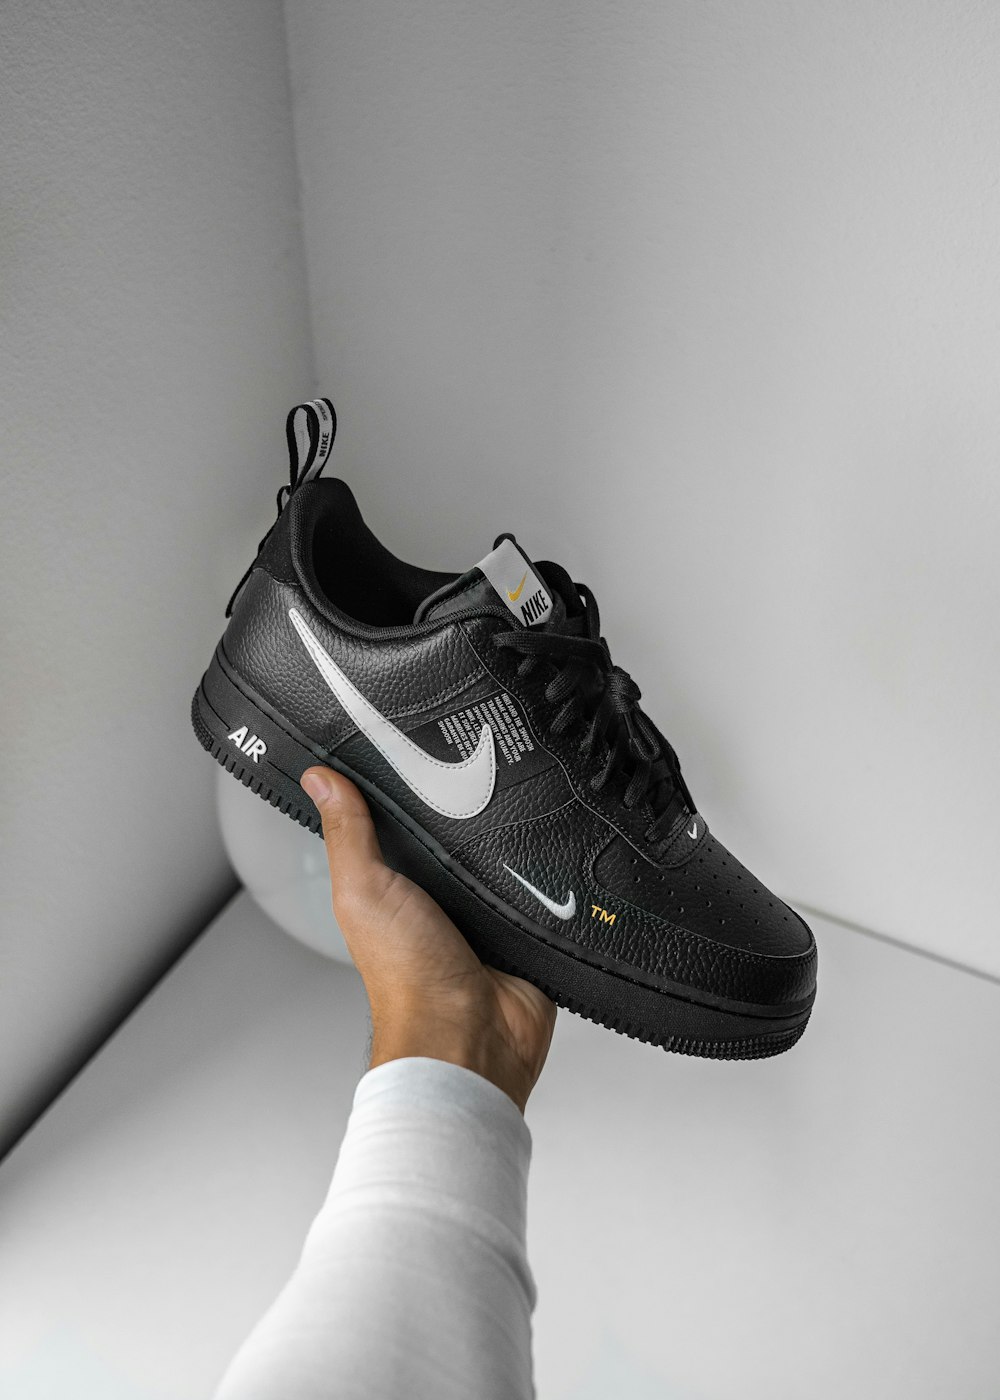 Zapatillas Nike Air Force 1 en blanco y negro